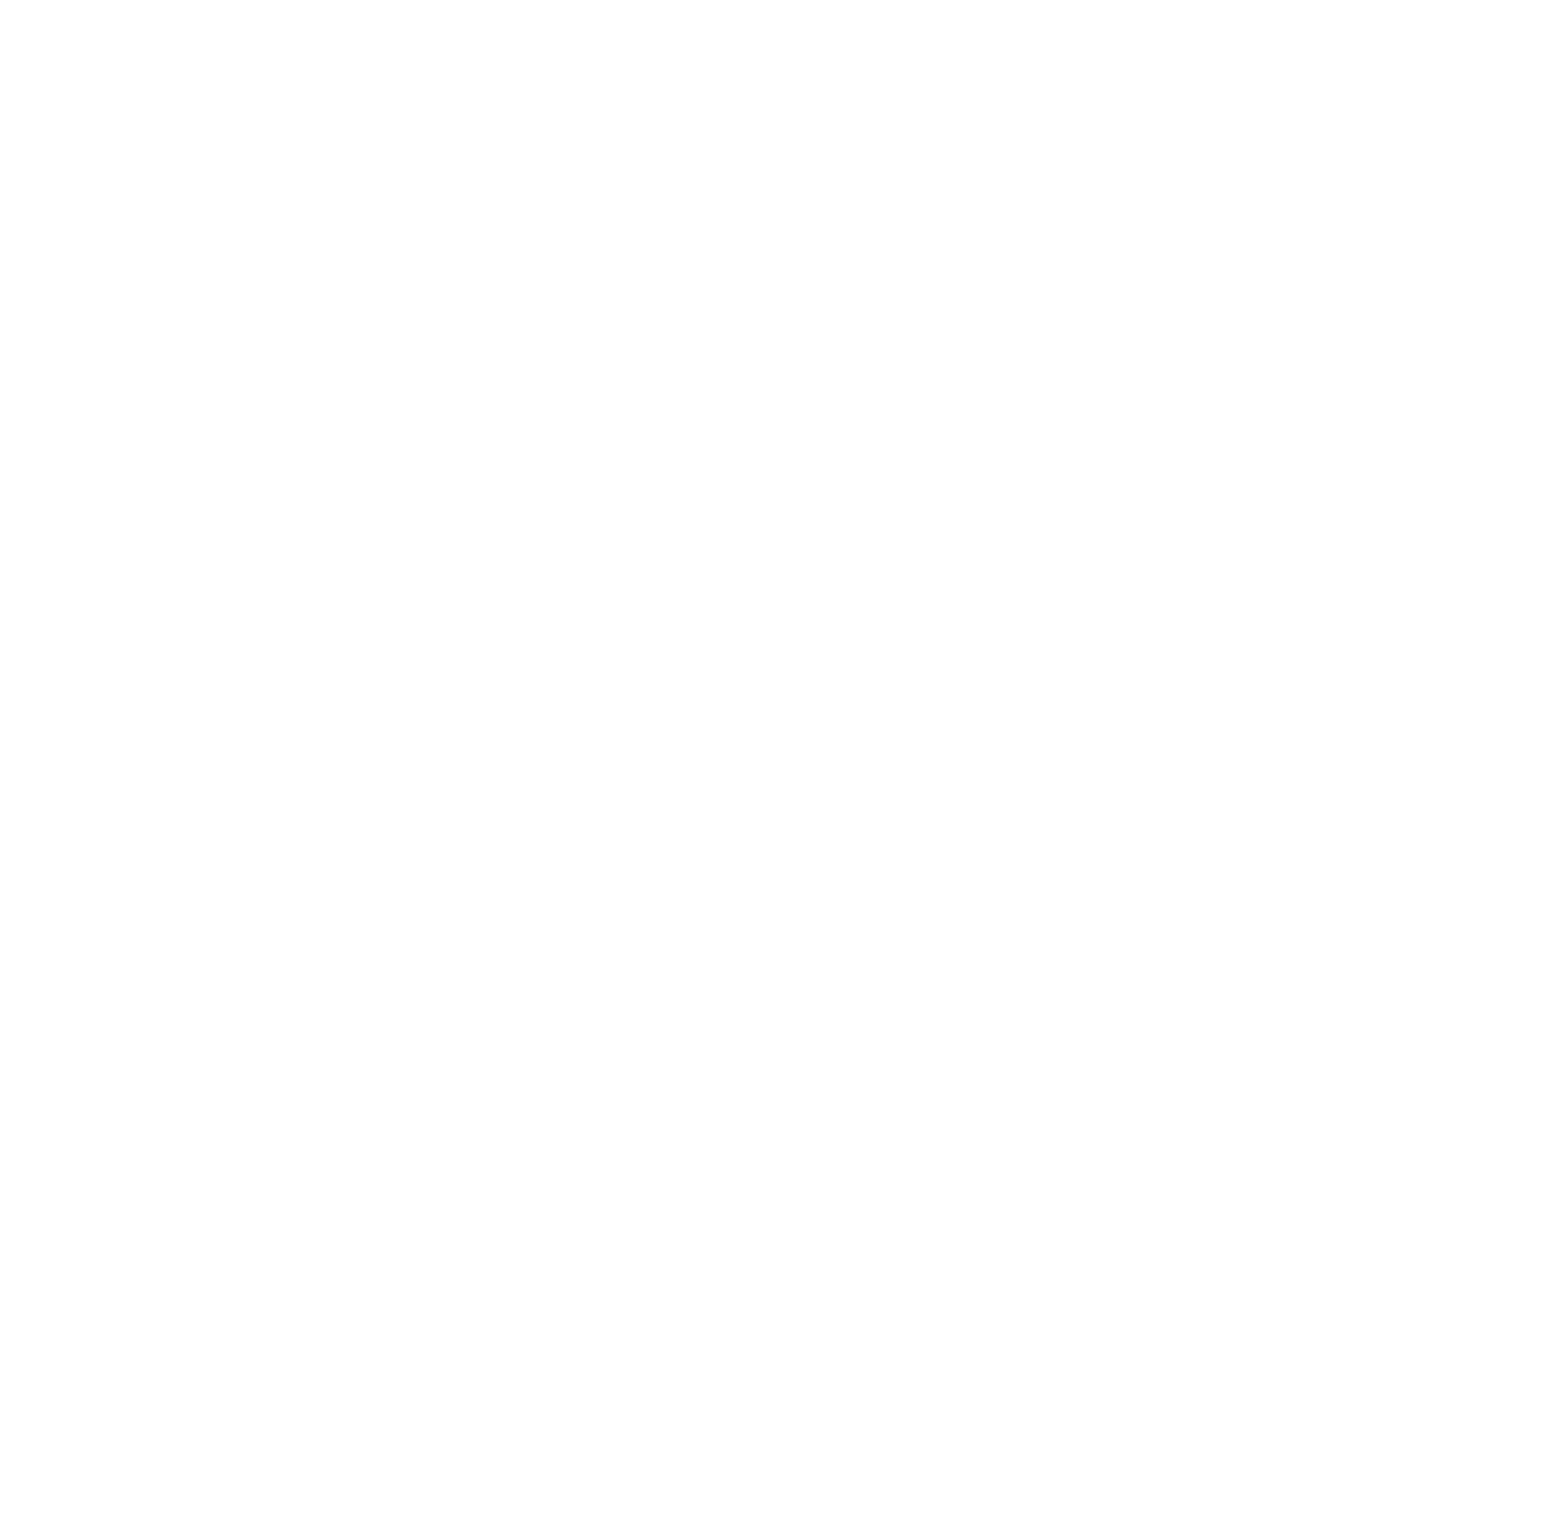 LegalZoom logo pour fonds sombres (PNG transparent)